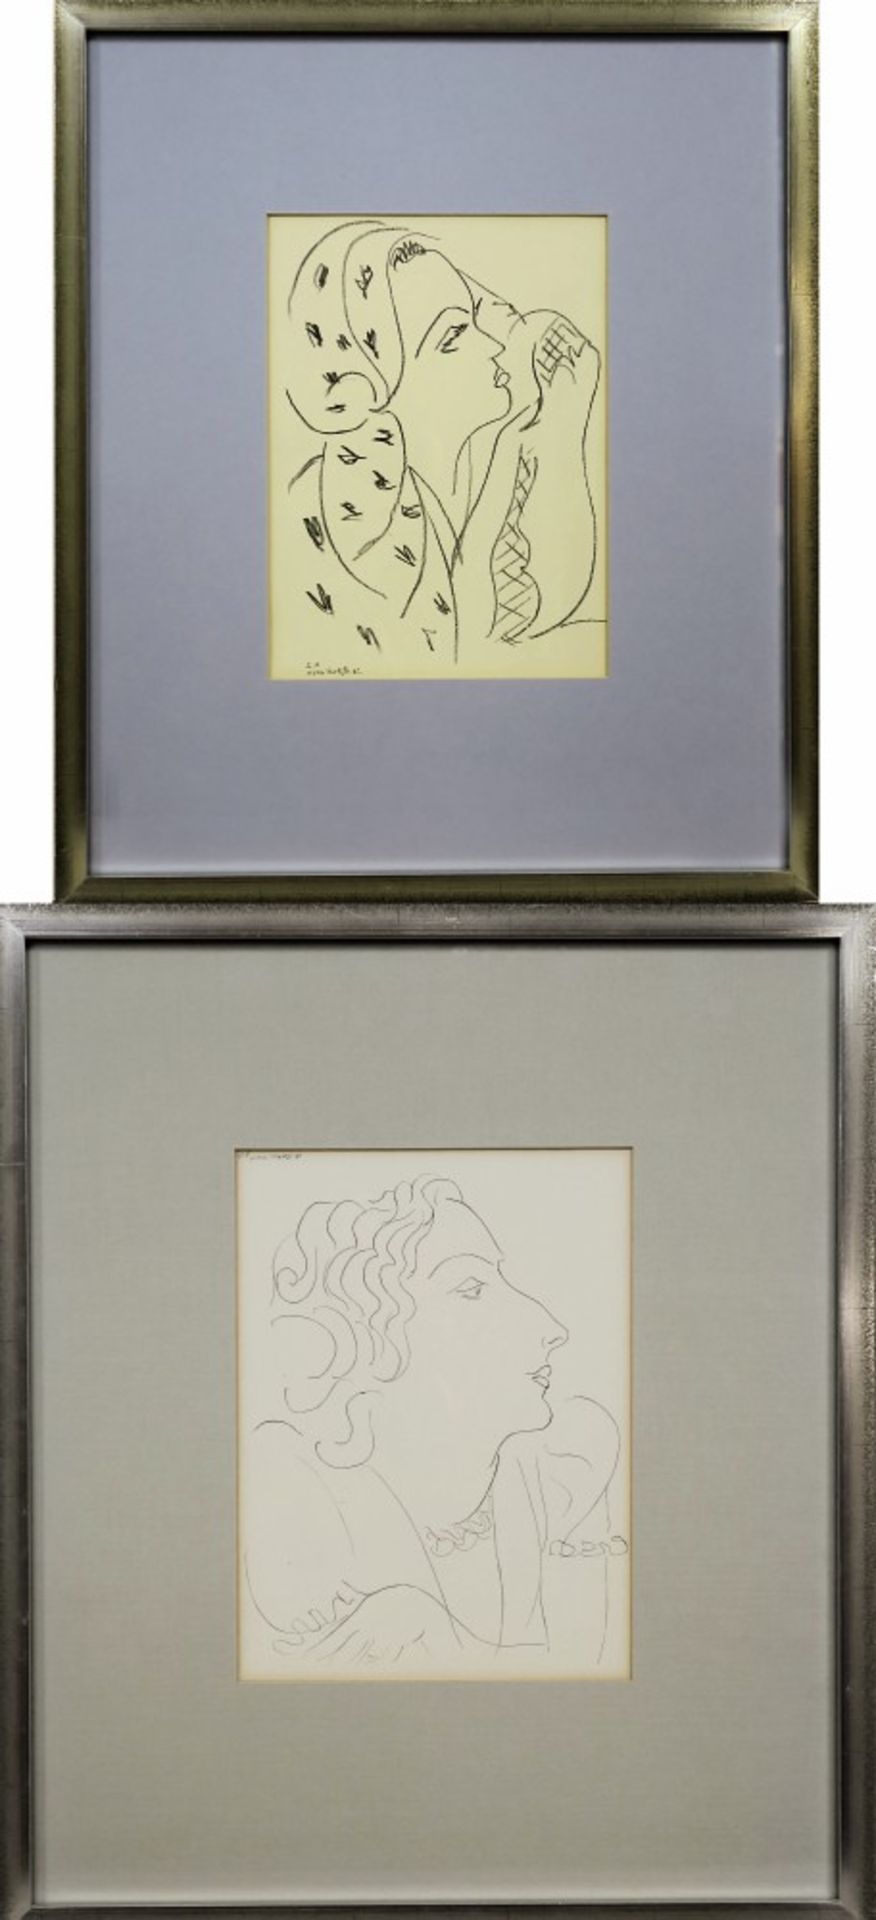 Matisse, Henri1869 Le Cateau-Cambrésis - 1954 Nizza, nachFemme au foulard / Frauenko